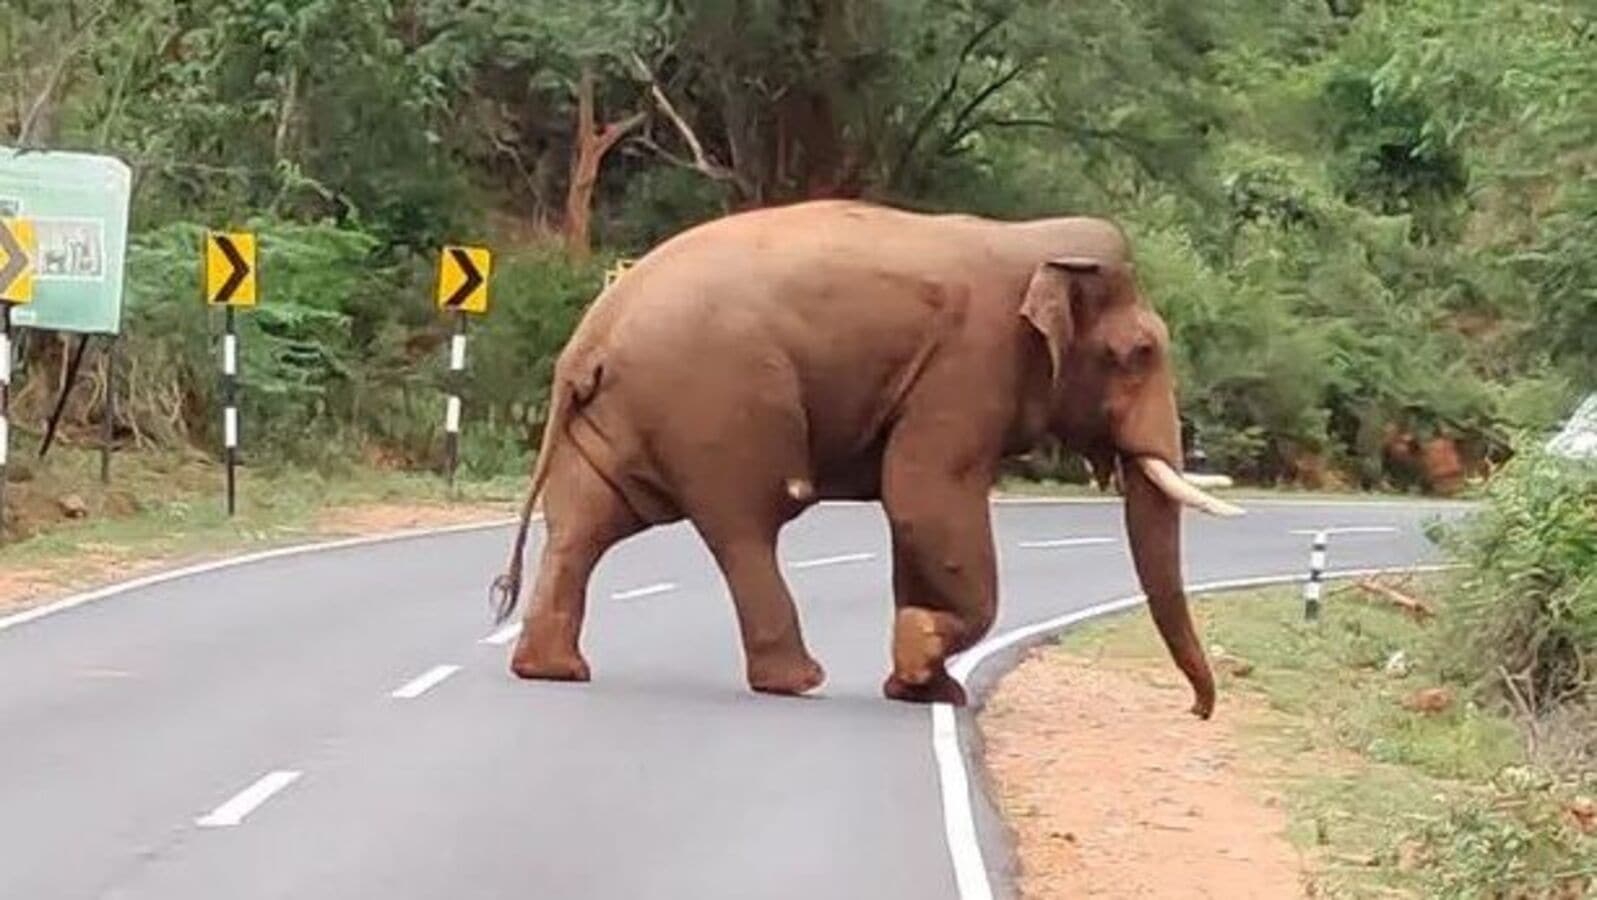 மீண்டும் ஊருக்குள் பாகுபலி - அச்சத்தில் மக்கள்!-the bagupali elephant left  the forest a year later and entered the city - HT Tamil